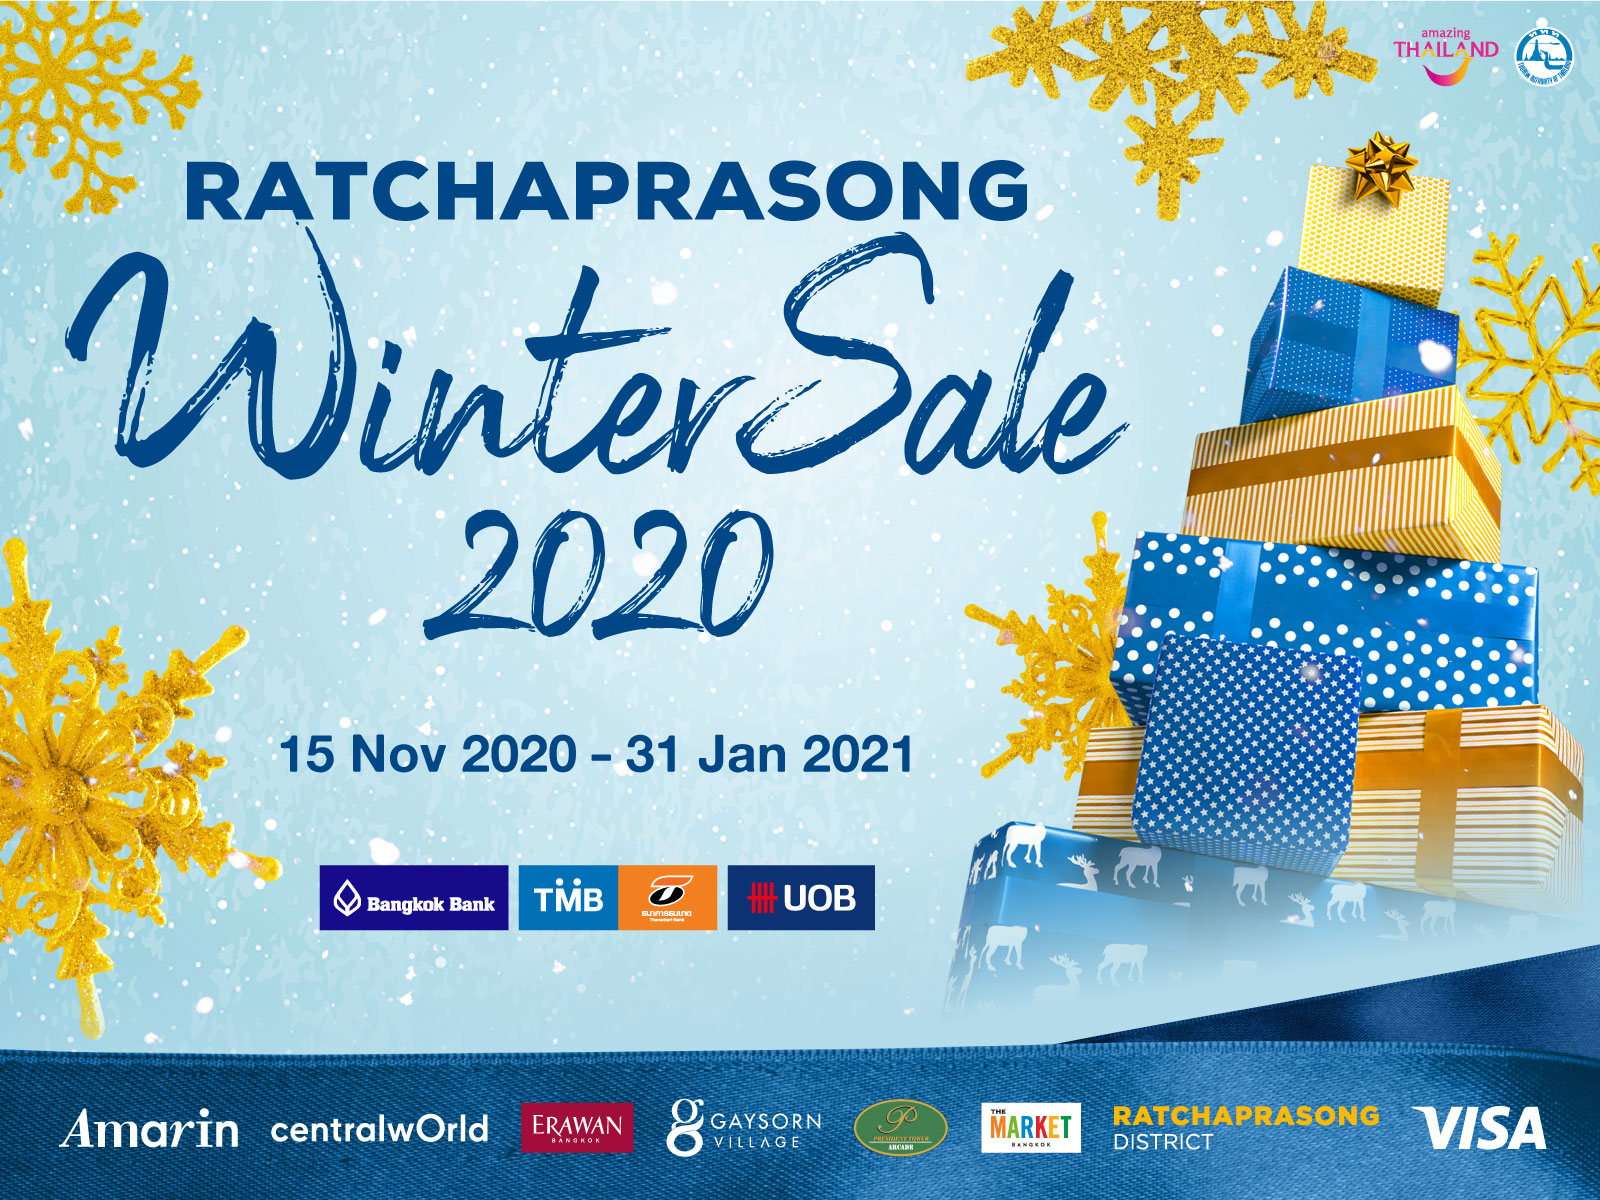 ขาช้อปพร้อมยัง! #ช้อปให้มันส์ #ช้อปดีมีคืน กับ Ratchaprasong Winter Sale 2020